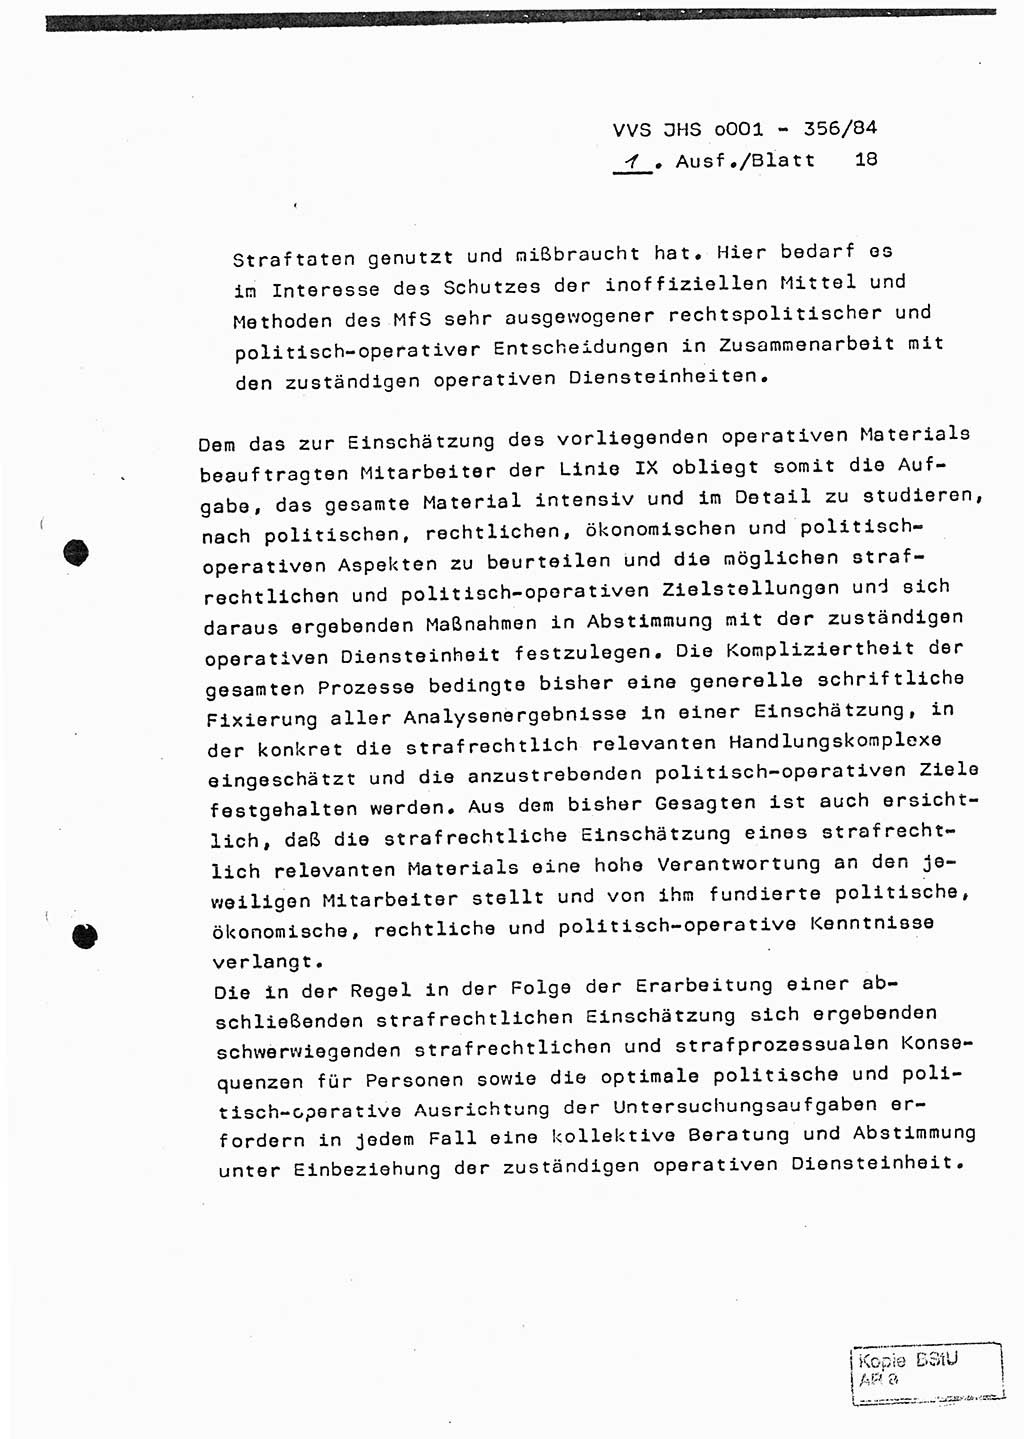 Diplomarbeit, Major Lutz Rahaus (HA Ⅸ/3), Ministerium für Staatssicherheit (MfS) [Deutsche Demokratische Republik (DDR)], Juristische Hochschule (JHS), Vertrauliche Verschlußsache (VVS) o001-356/84, Potsdam 1984, Seite 18 (Dipl.-Arb. MfS DDR JHS VVS o001-356/84 1984, S. 18)